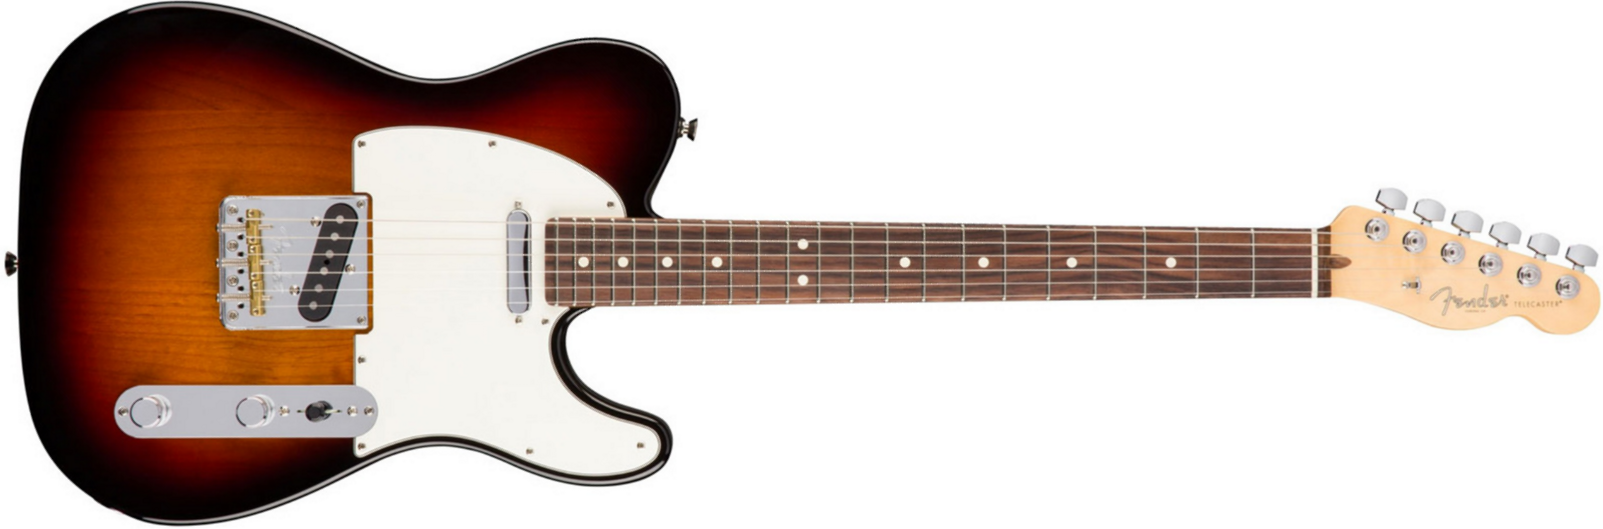 Fender Tele American Professional 2s Usa Rw - 3-color Sunburst - E-Gitarre in Str-Form - Main picture